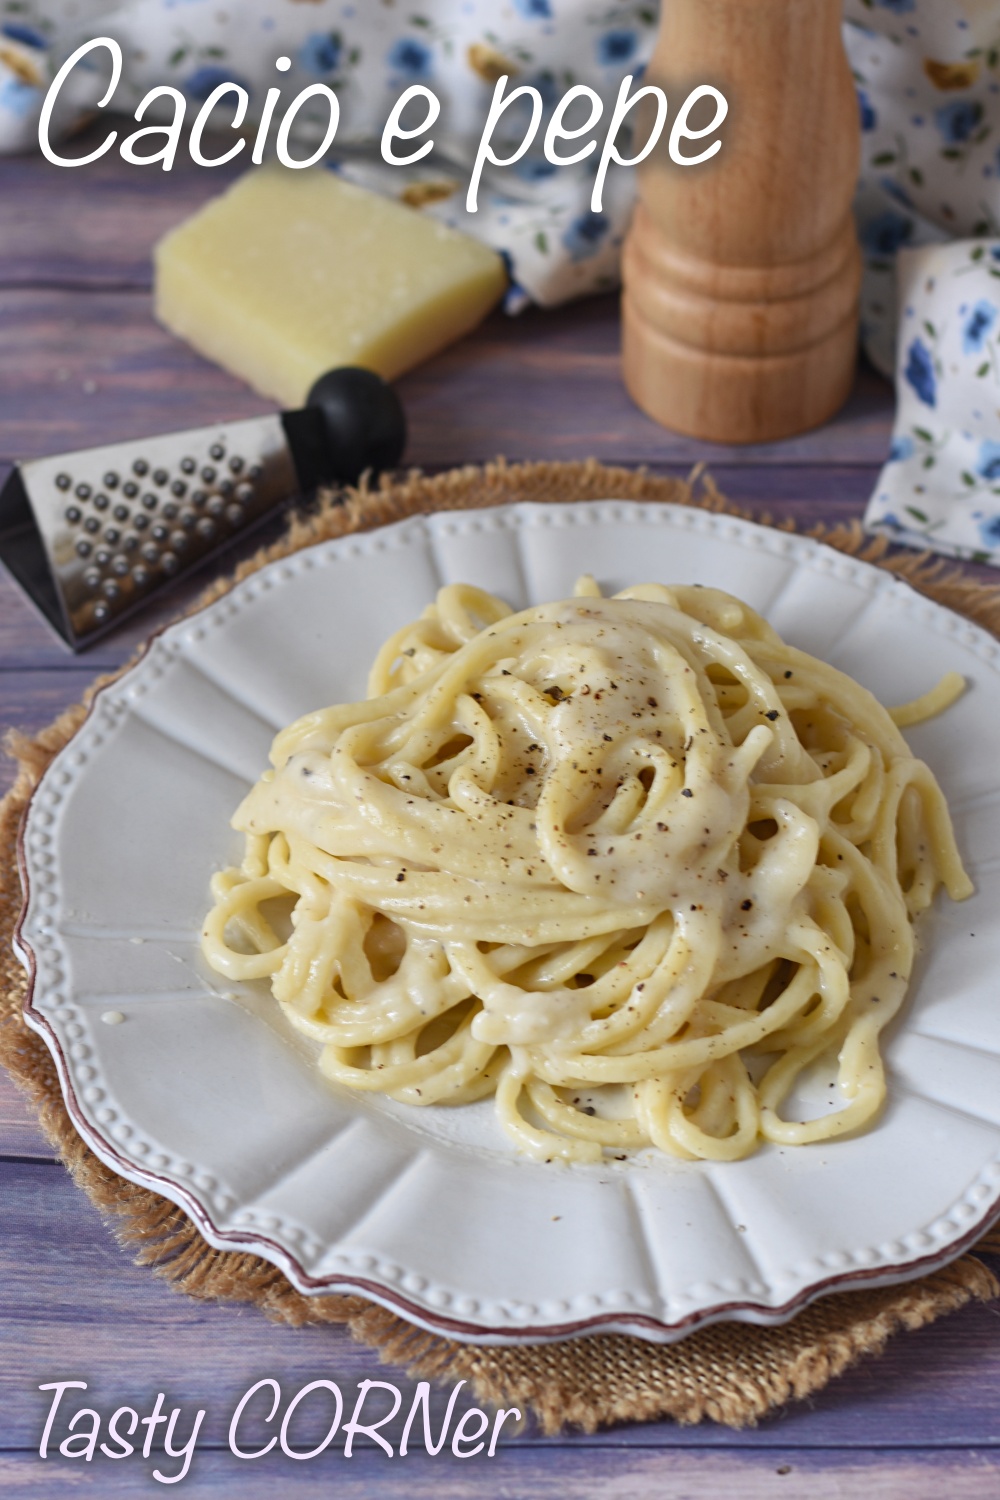 en_v_ authentic cacio e pepe pasta original recipe from Rome creamy spaghetti tonnarelli with 2 ingredients